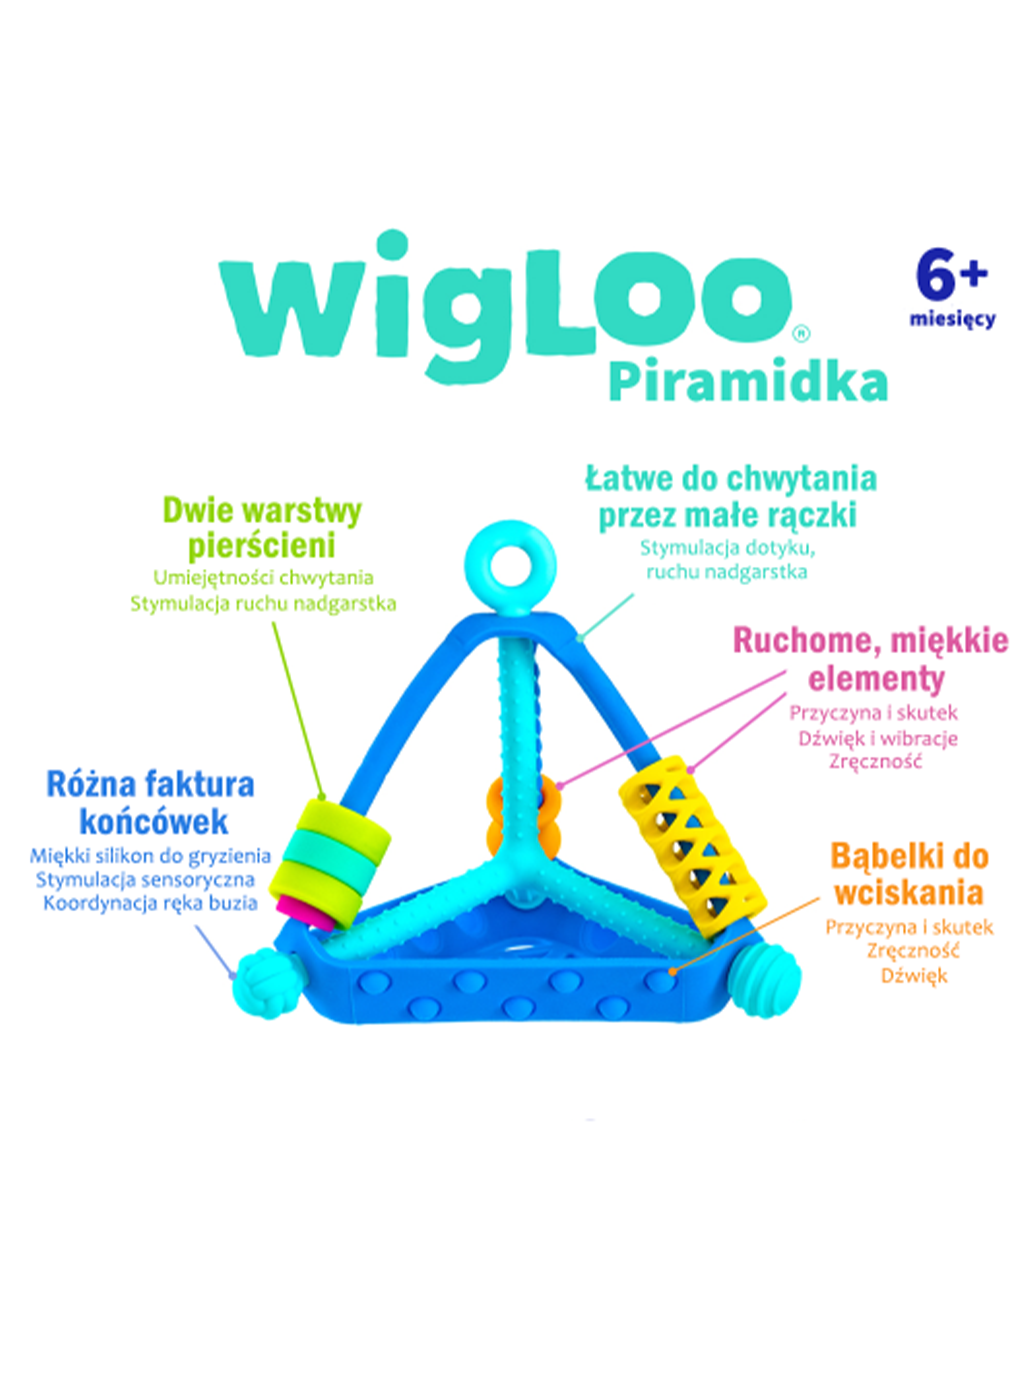 Senzorická pyramidová hračka Wigloo